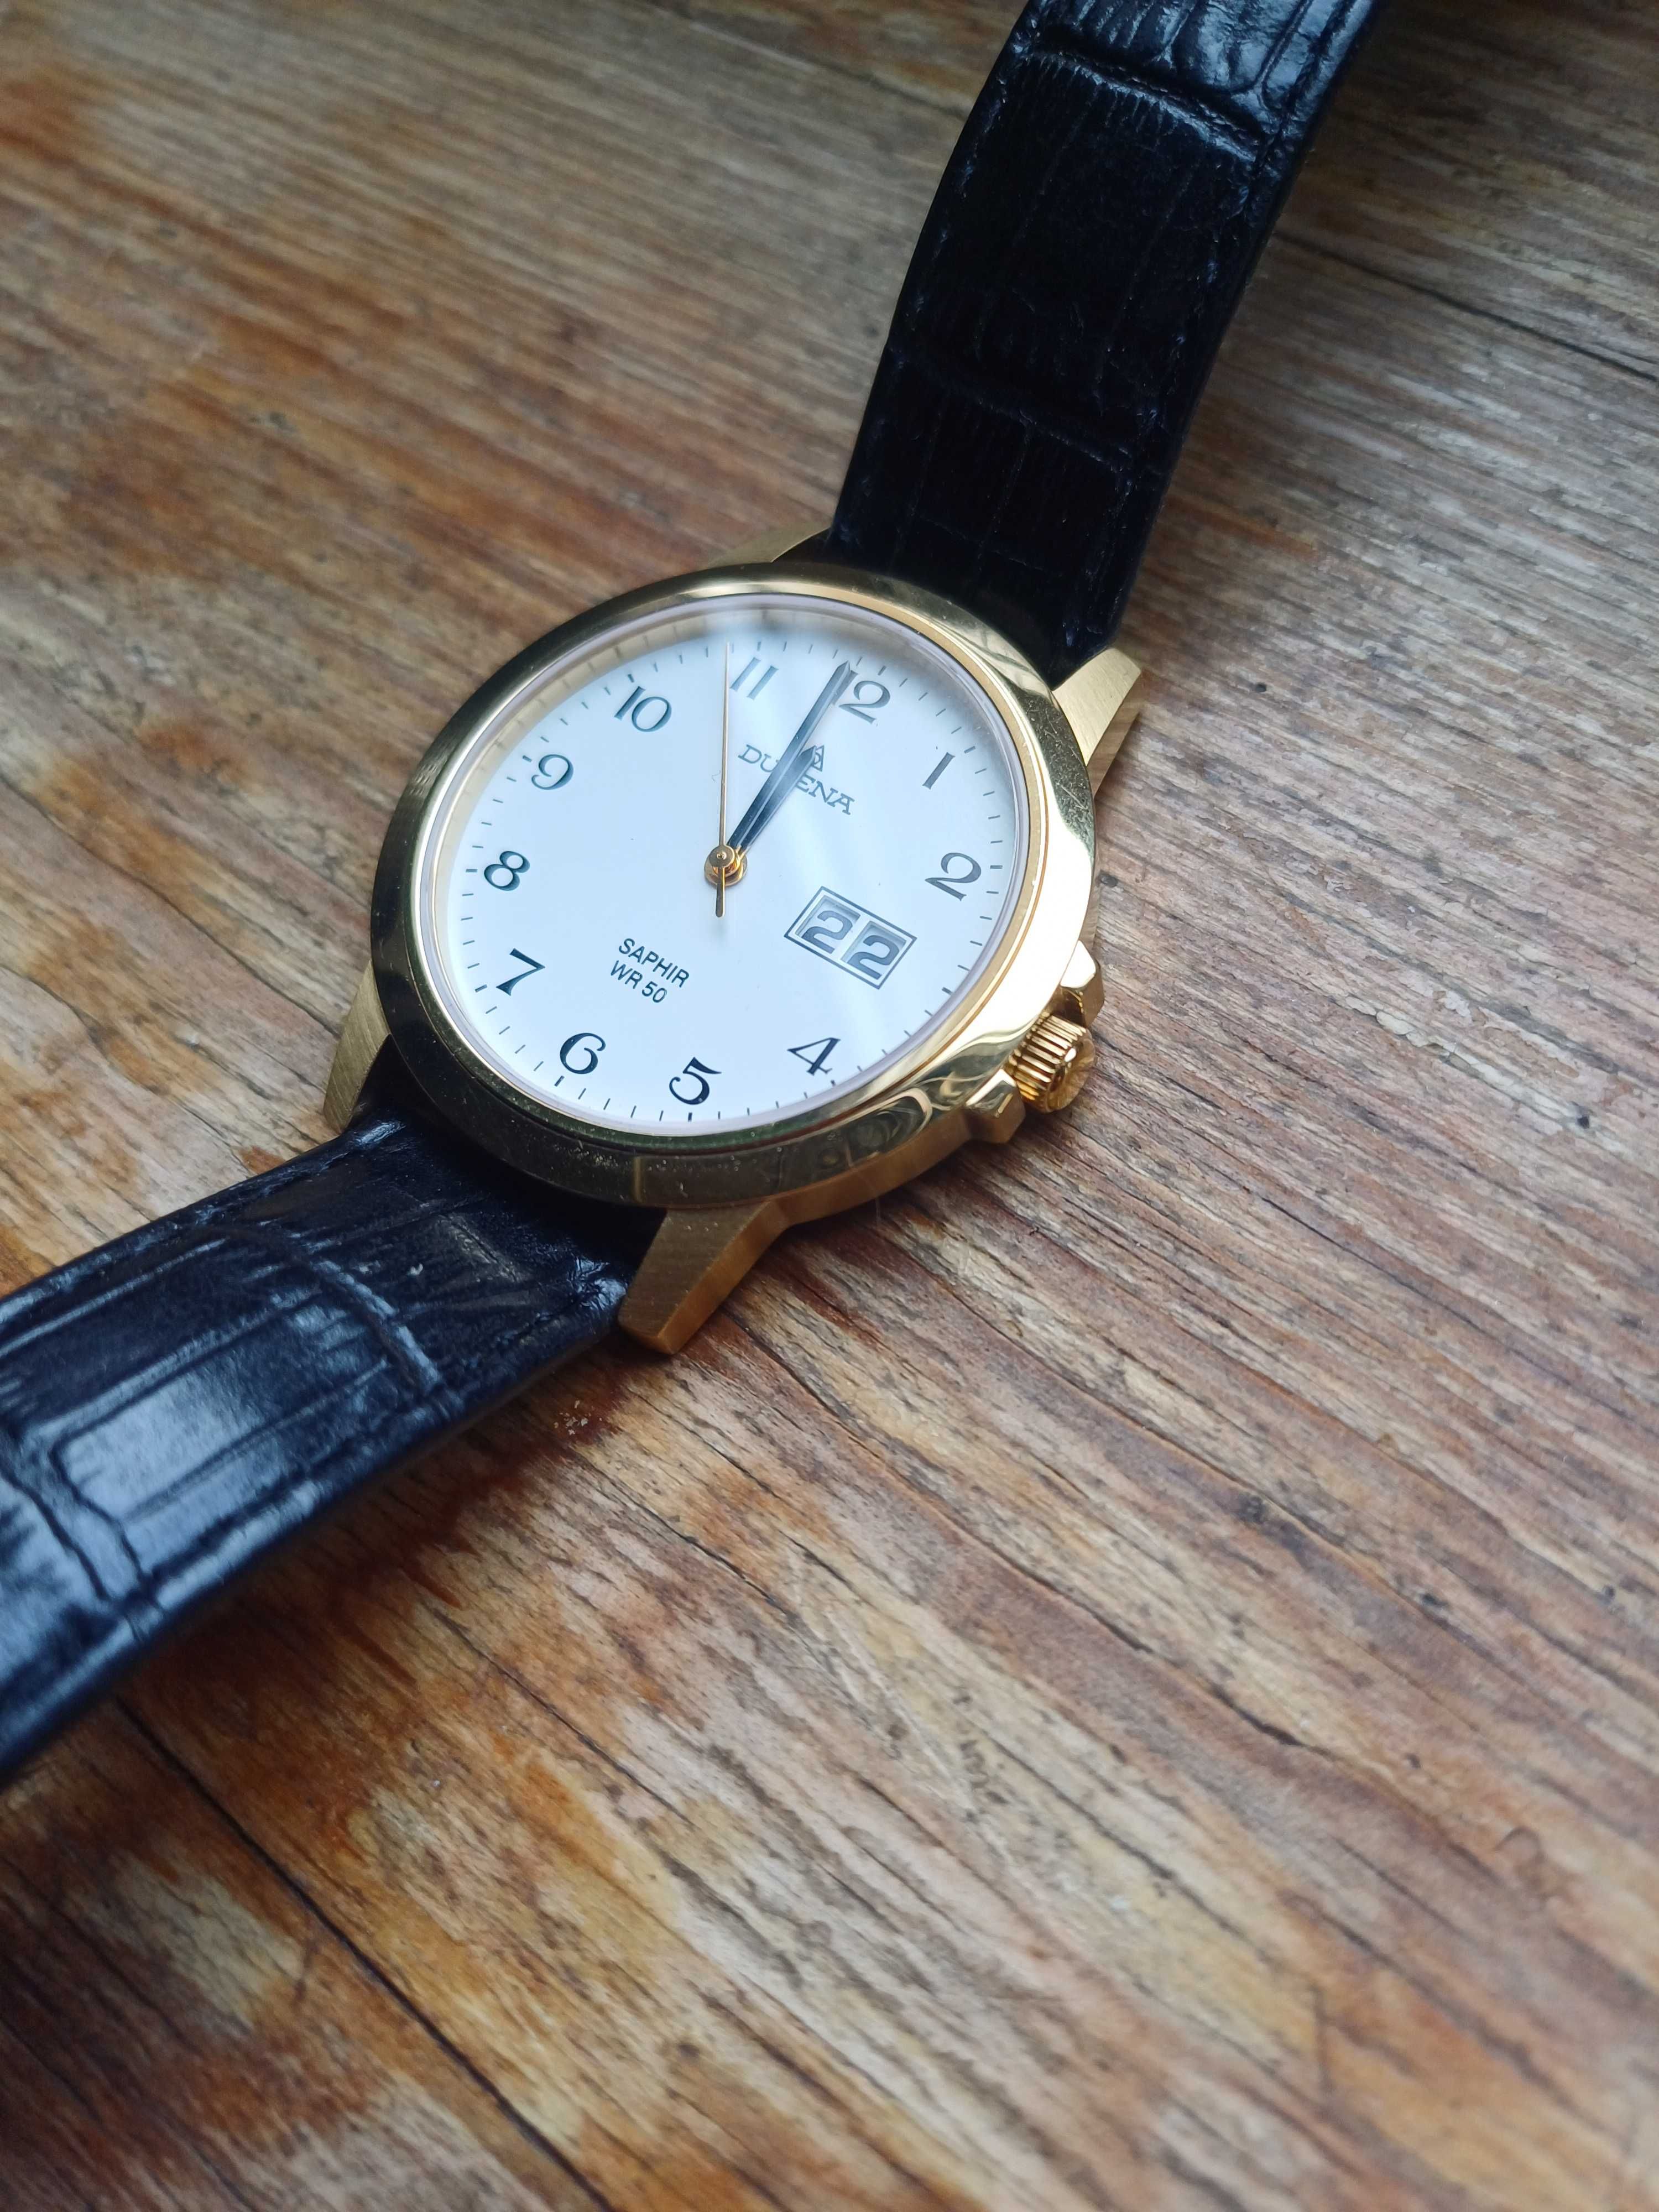 Zegarek męski Dugena Saphire WR50. Stan Idealny